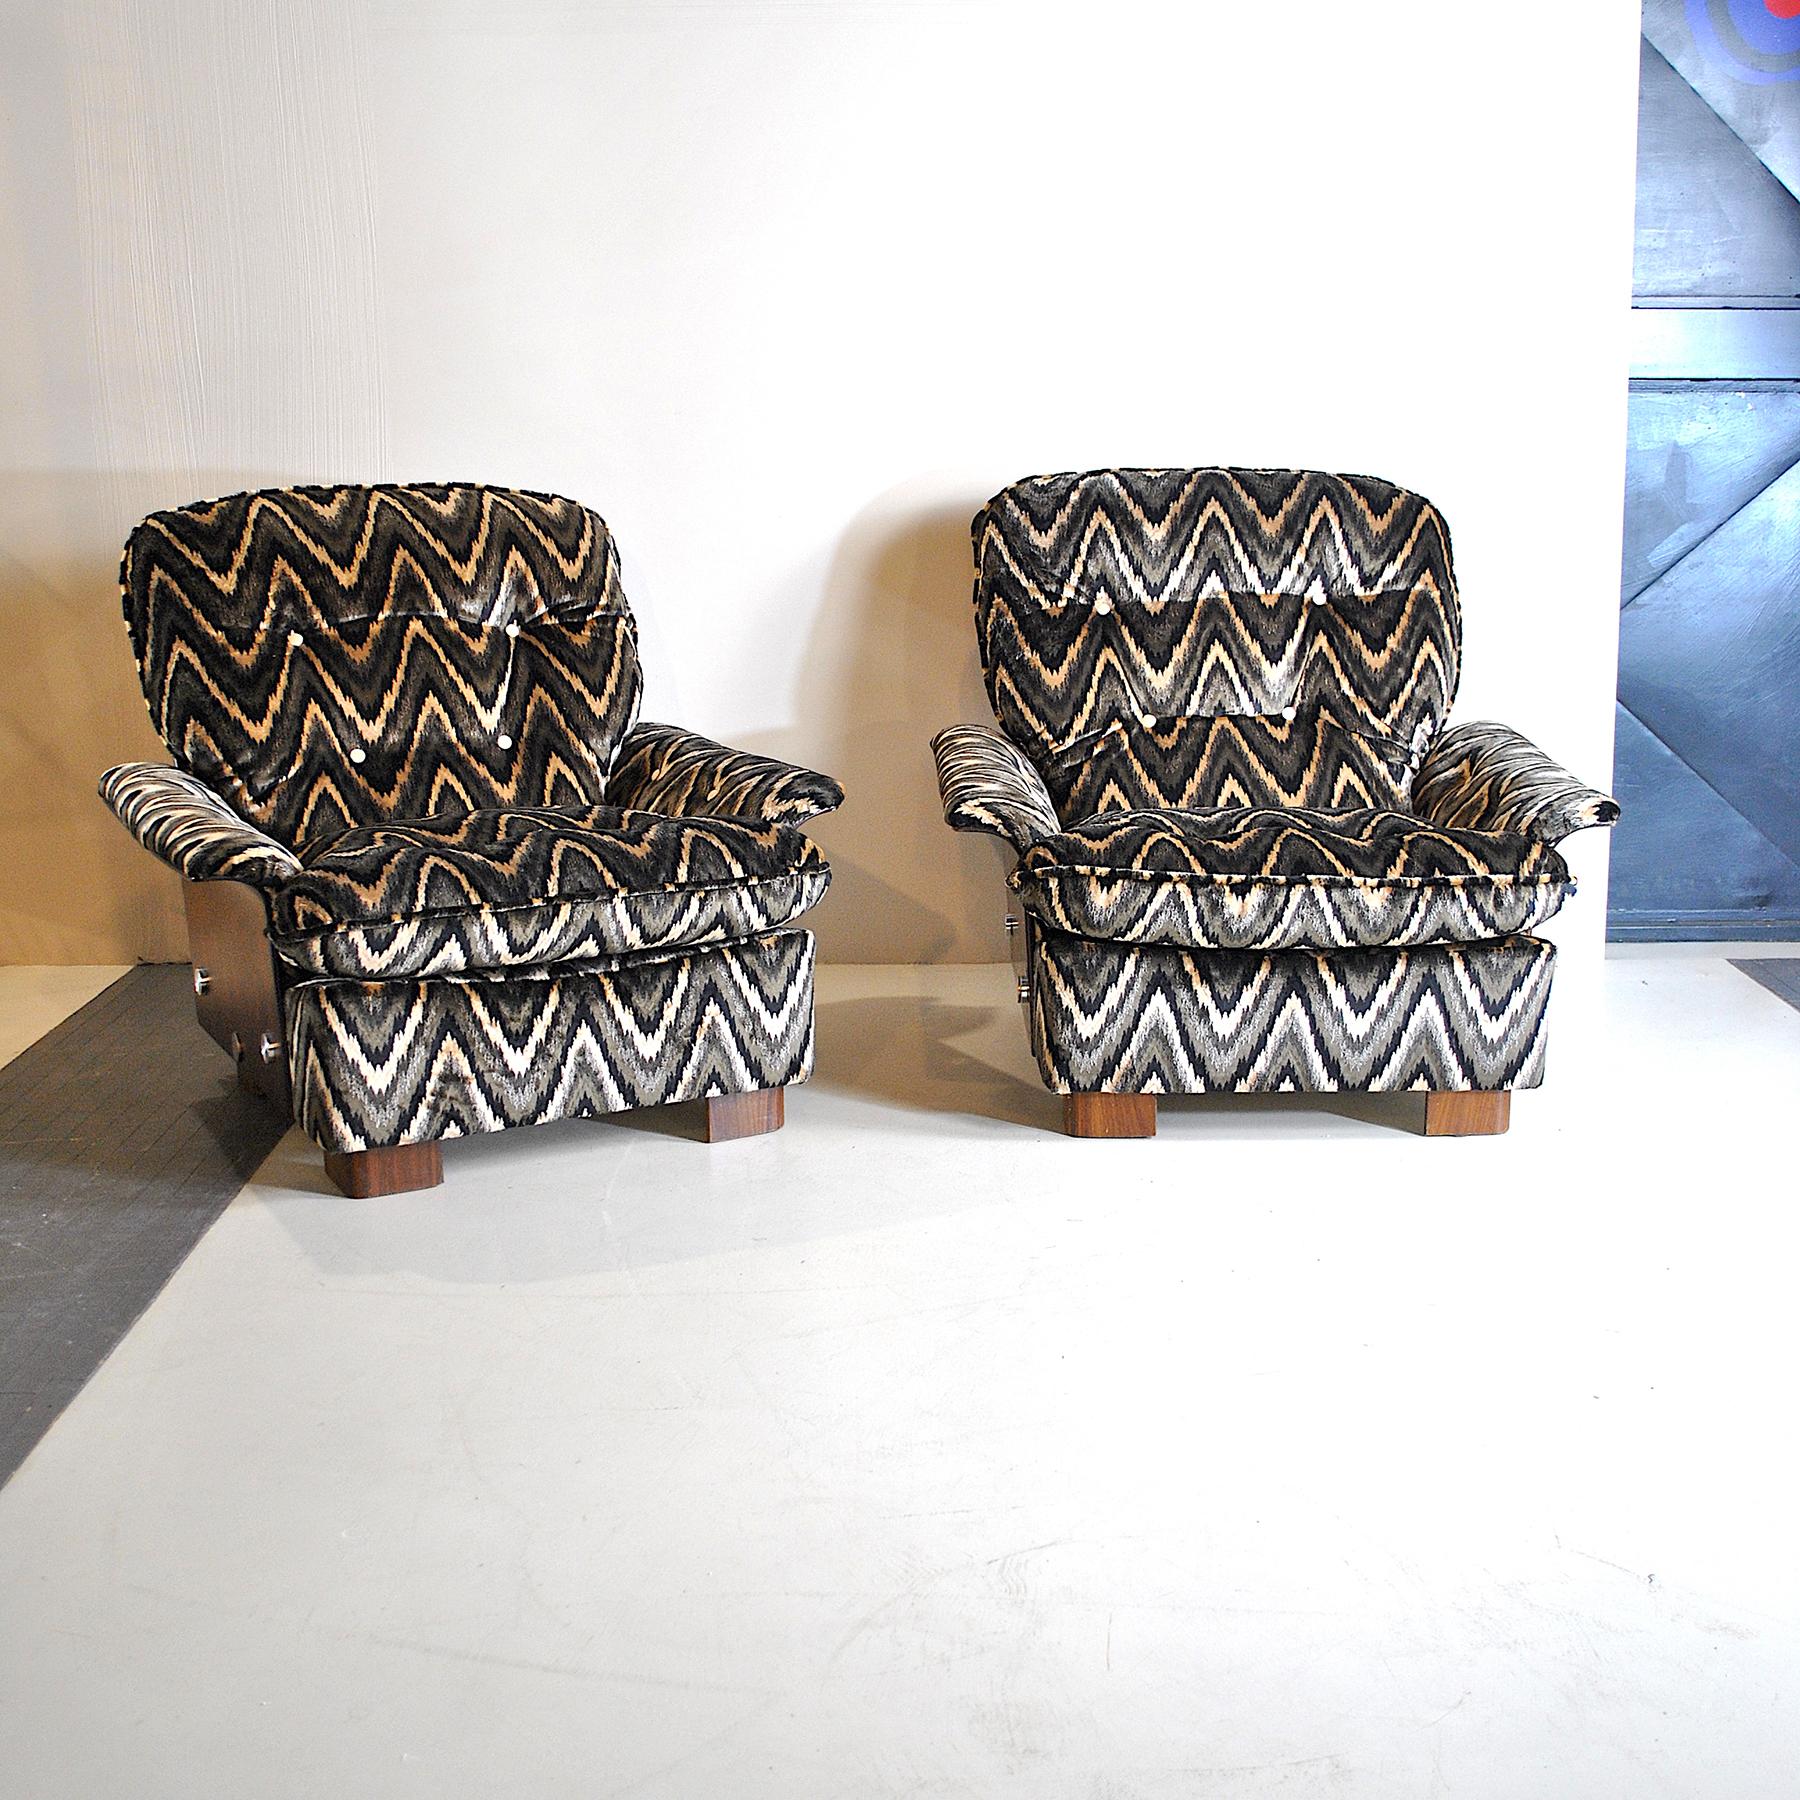 Paire de fauteuils italiens en bois courbé avec tissu Missoni d'origine des années 1970.